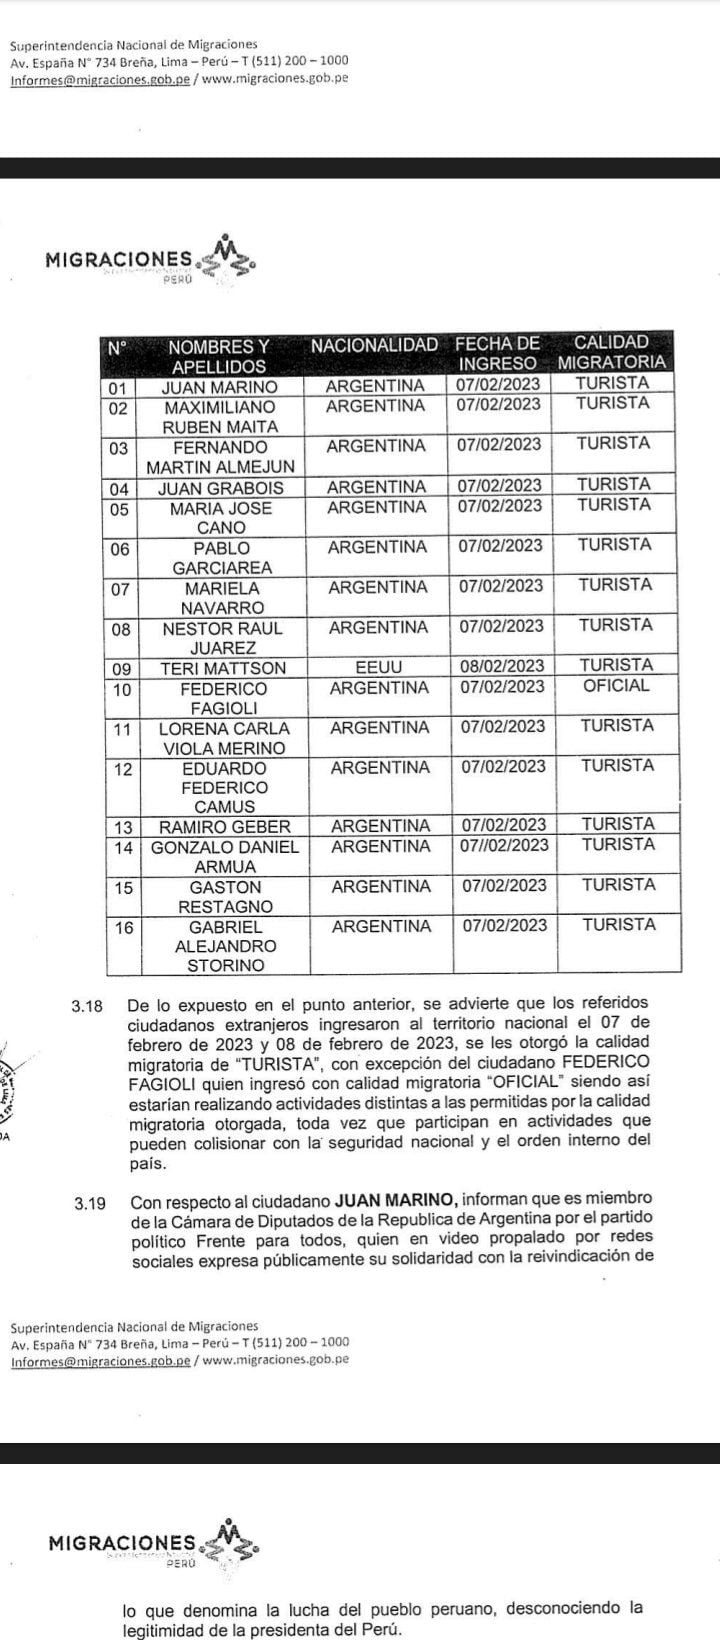 Lista de extranjeros con impedimento al país. Pedro Castillo - misión de solidaridad internacional